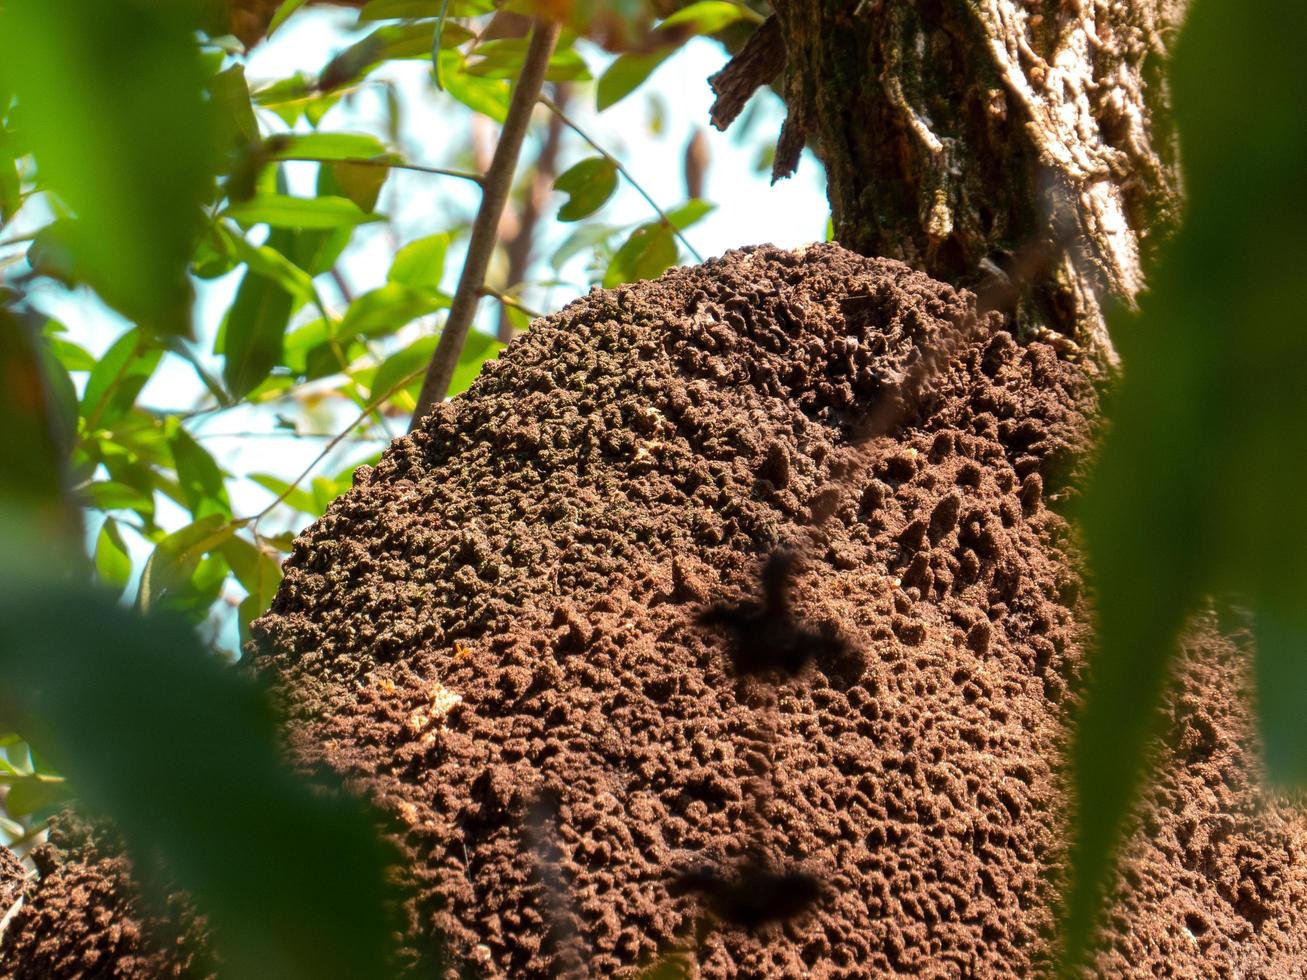 termietennest in kolonie op boom. deze insecten zijn verantwoordelijk voor het vernietigen van houten voorwerpen en huizen. foto